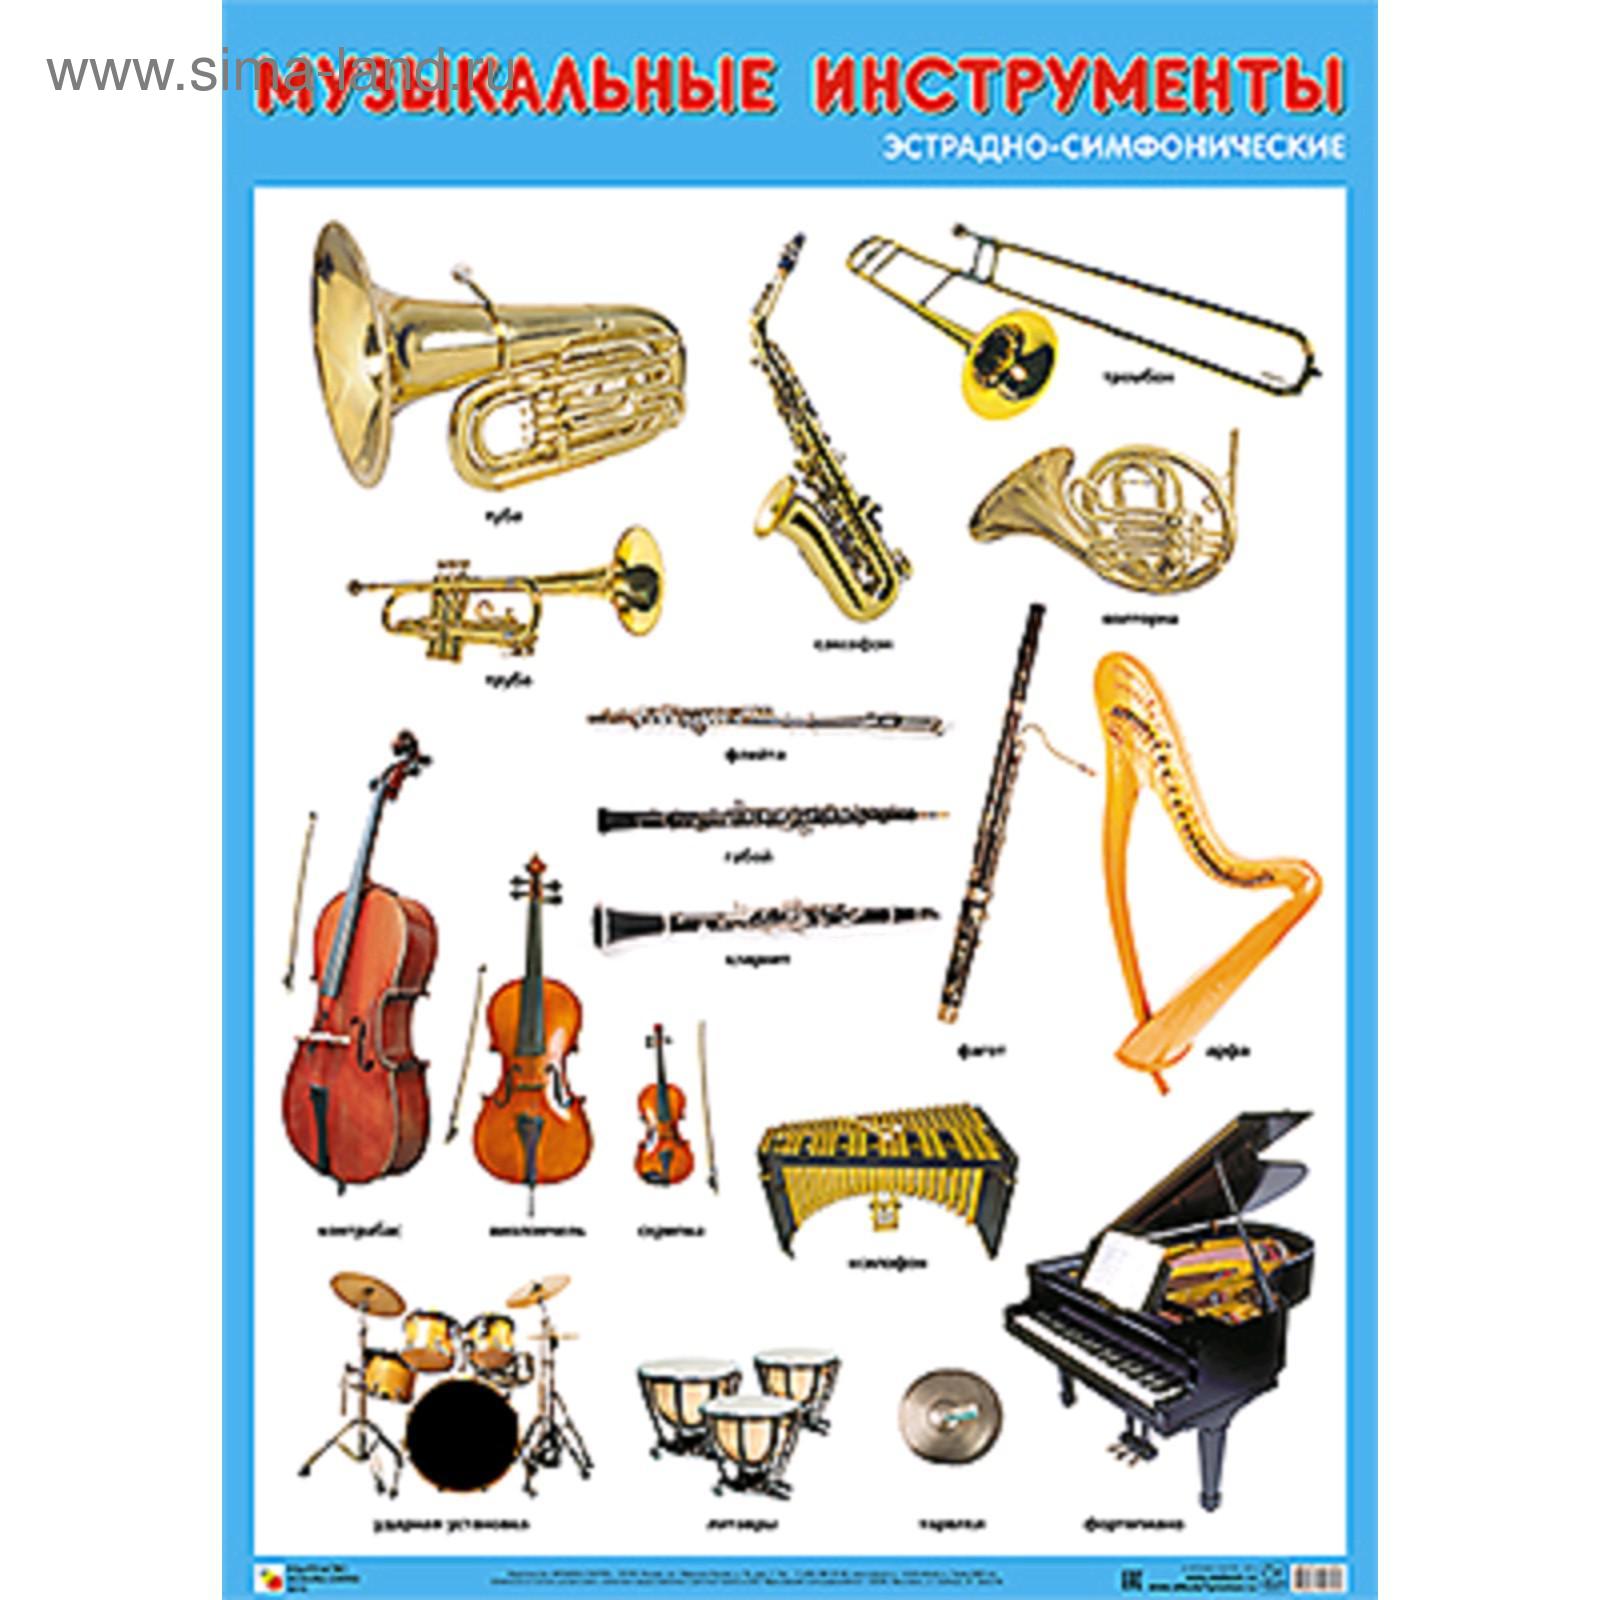 Плакат музыкальные инструменты эстрадно-симфонического оркестра